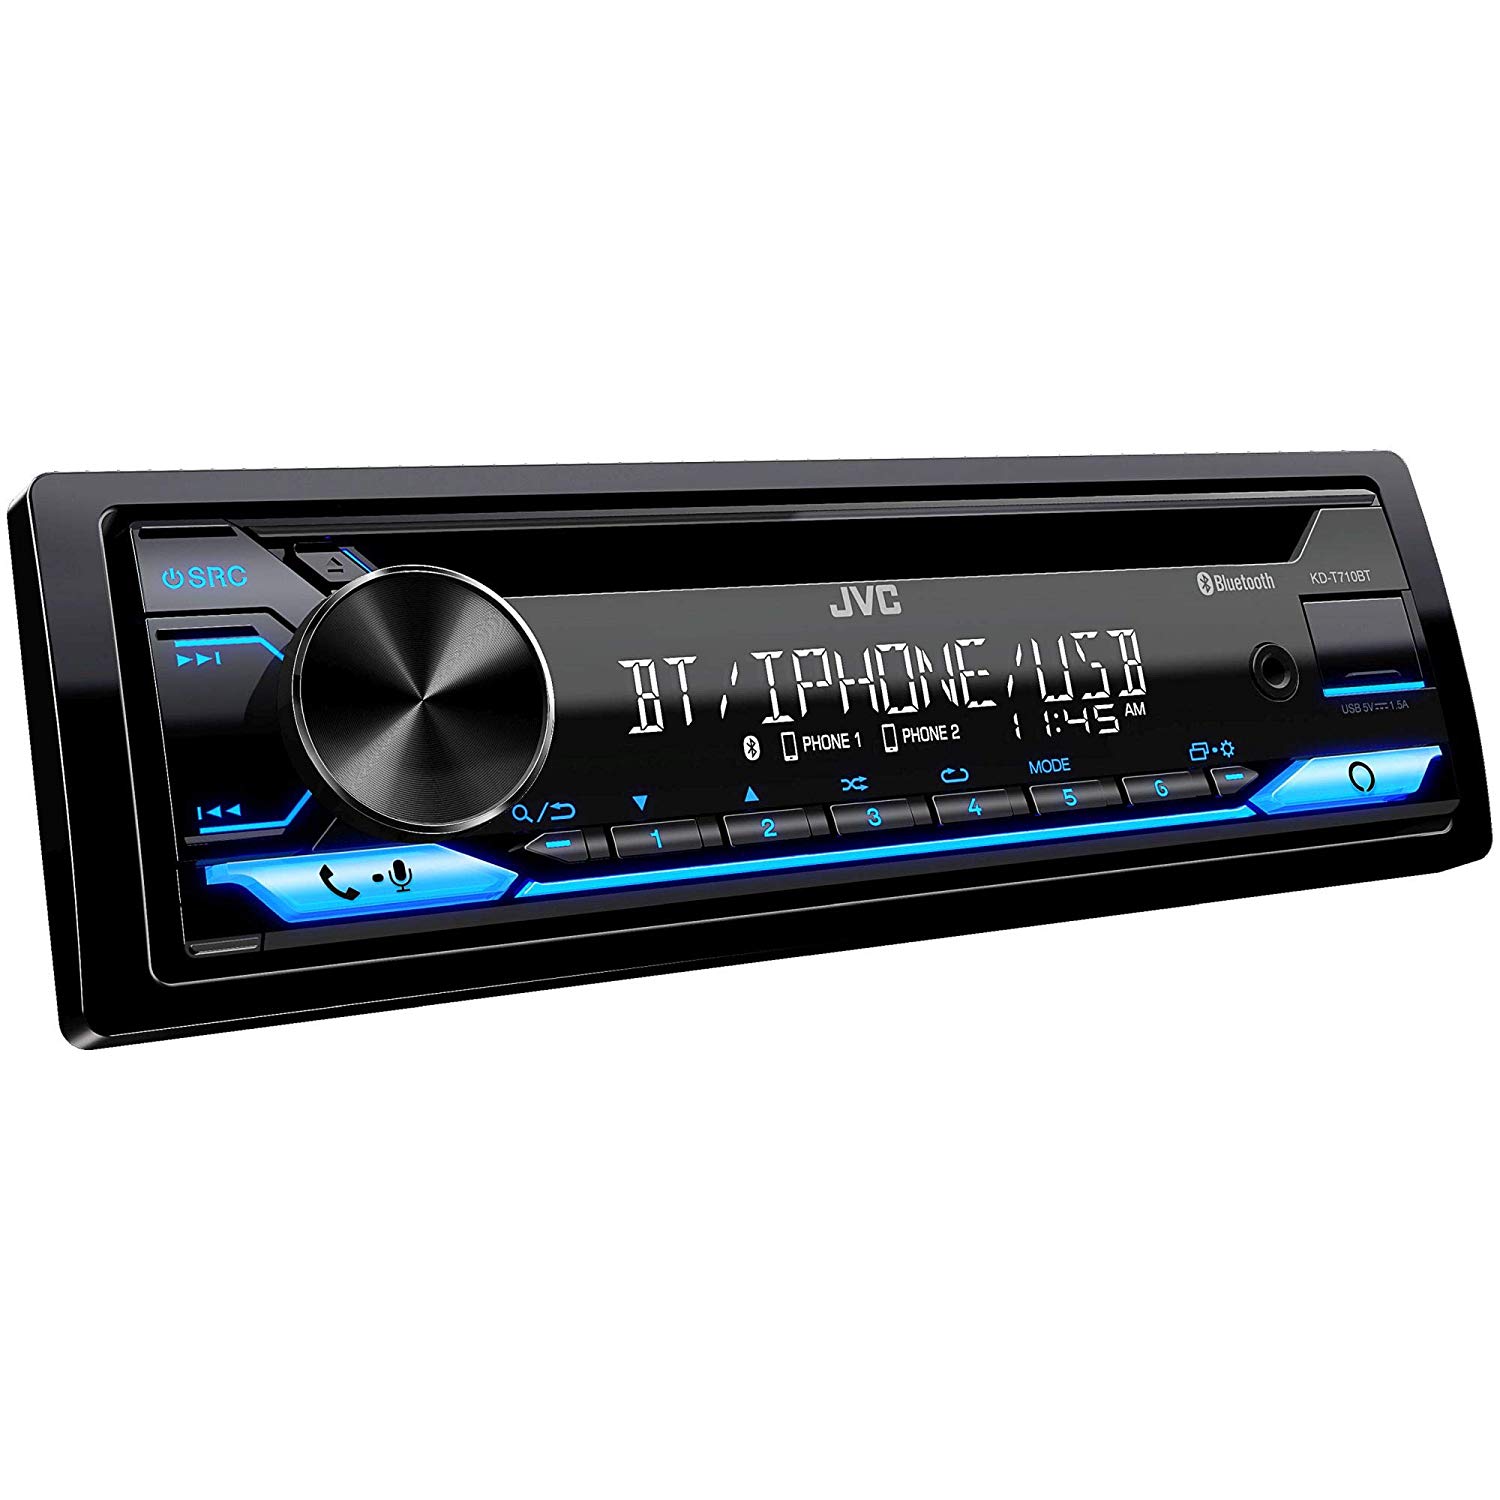 JVC جيه في سي KDT710BT In-Dash Digital Media Car Stereo Receiver